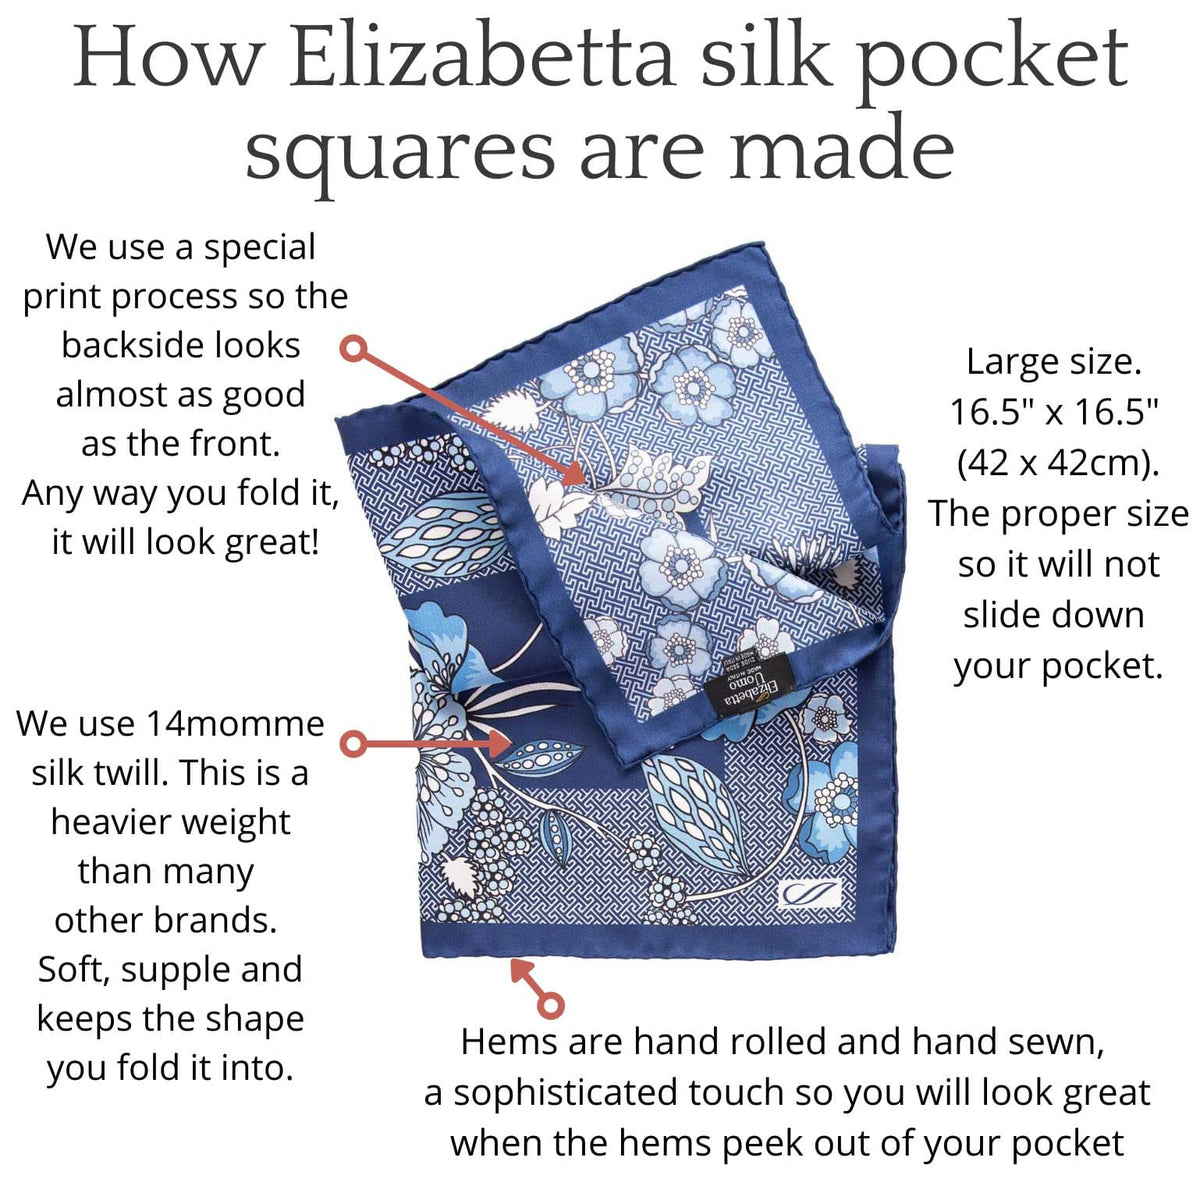 How Elilzabetta pocket squares are made